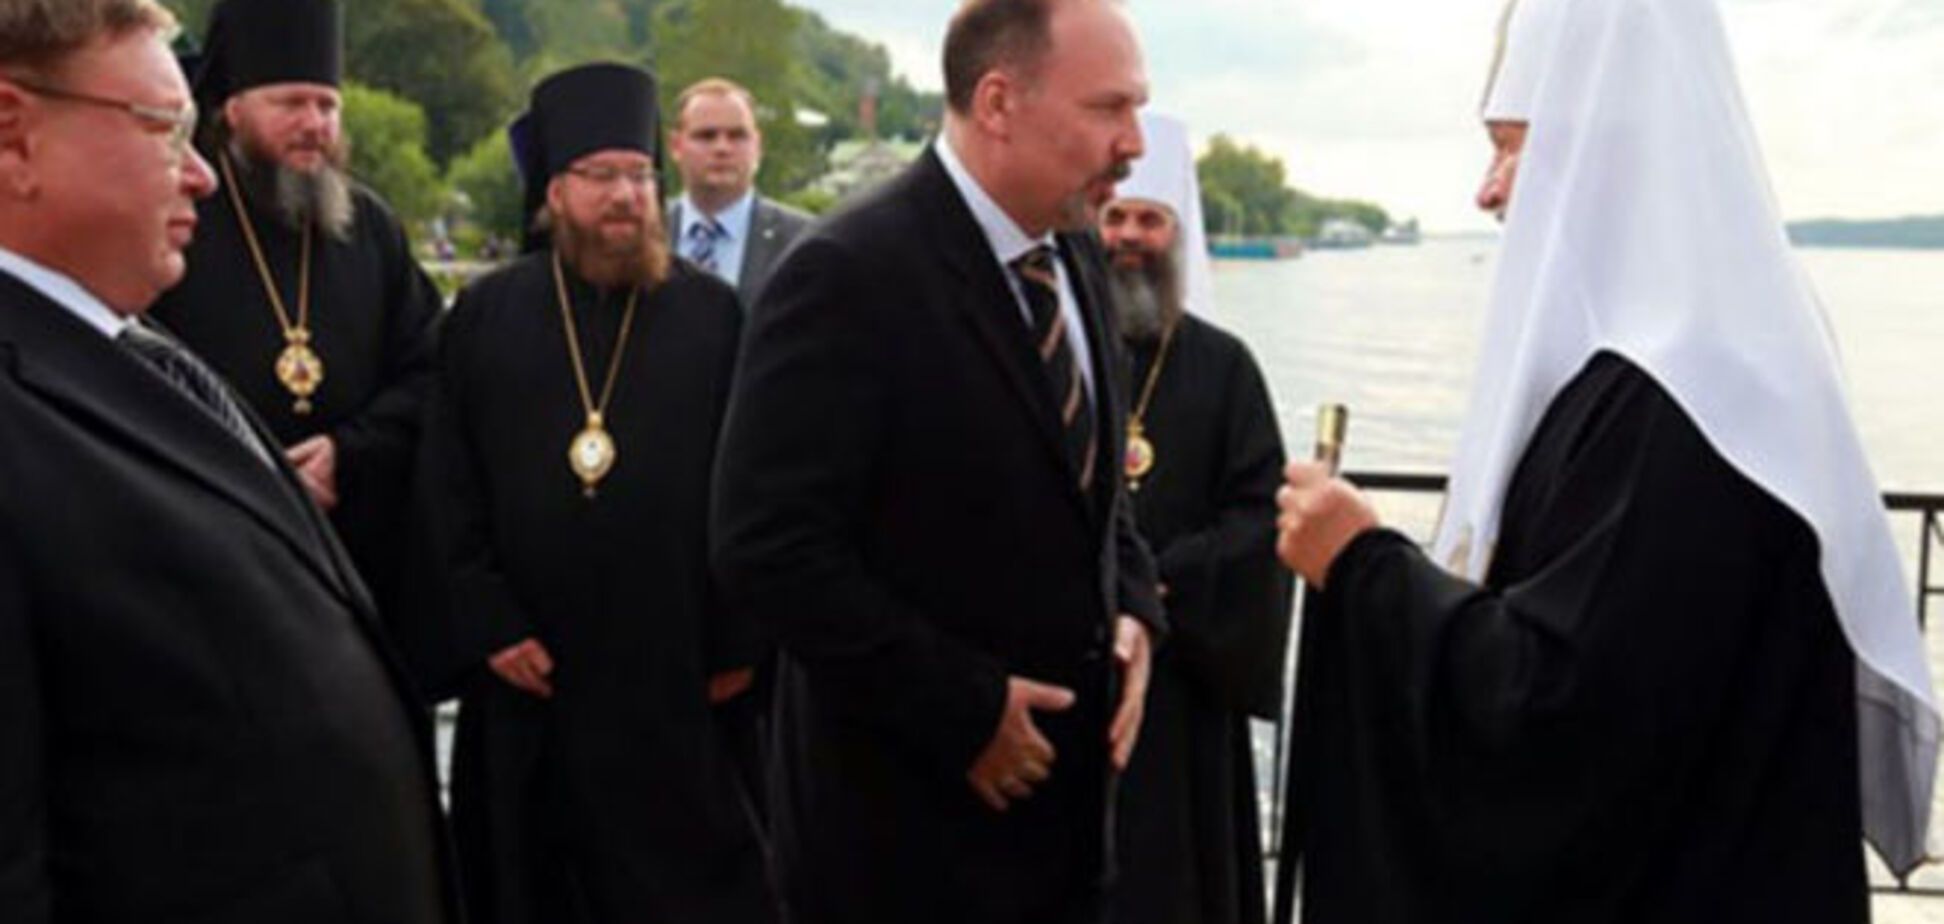 Патріарх Кирило прибув до парафіян на особистій люксовій яхті: опубліковані фото